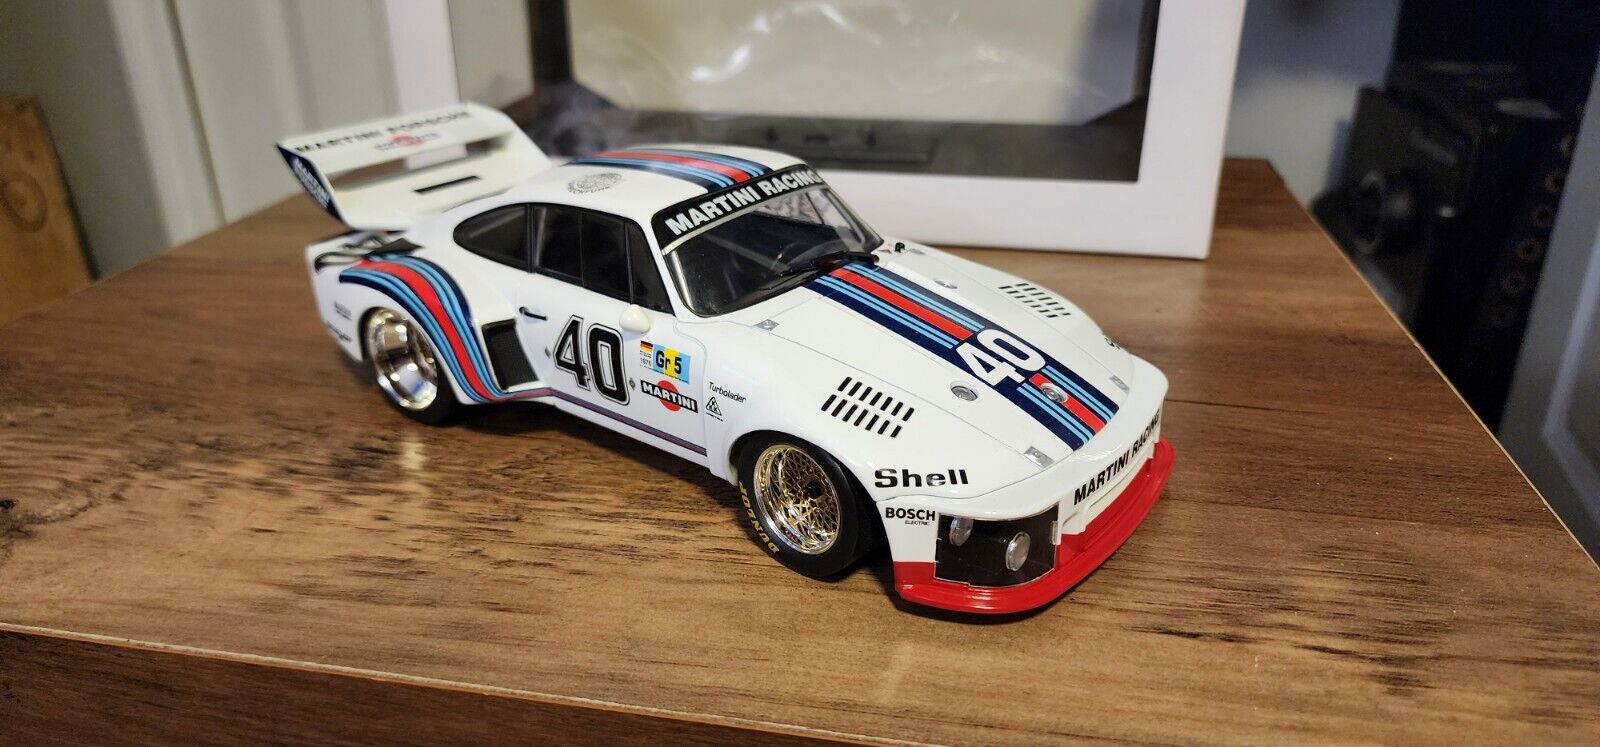 Norev 1976 Porsche 935 Martini 24h LM   Stommelen/Schurti #40 1:18 911 917k 944